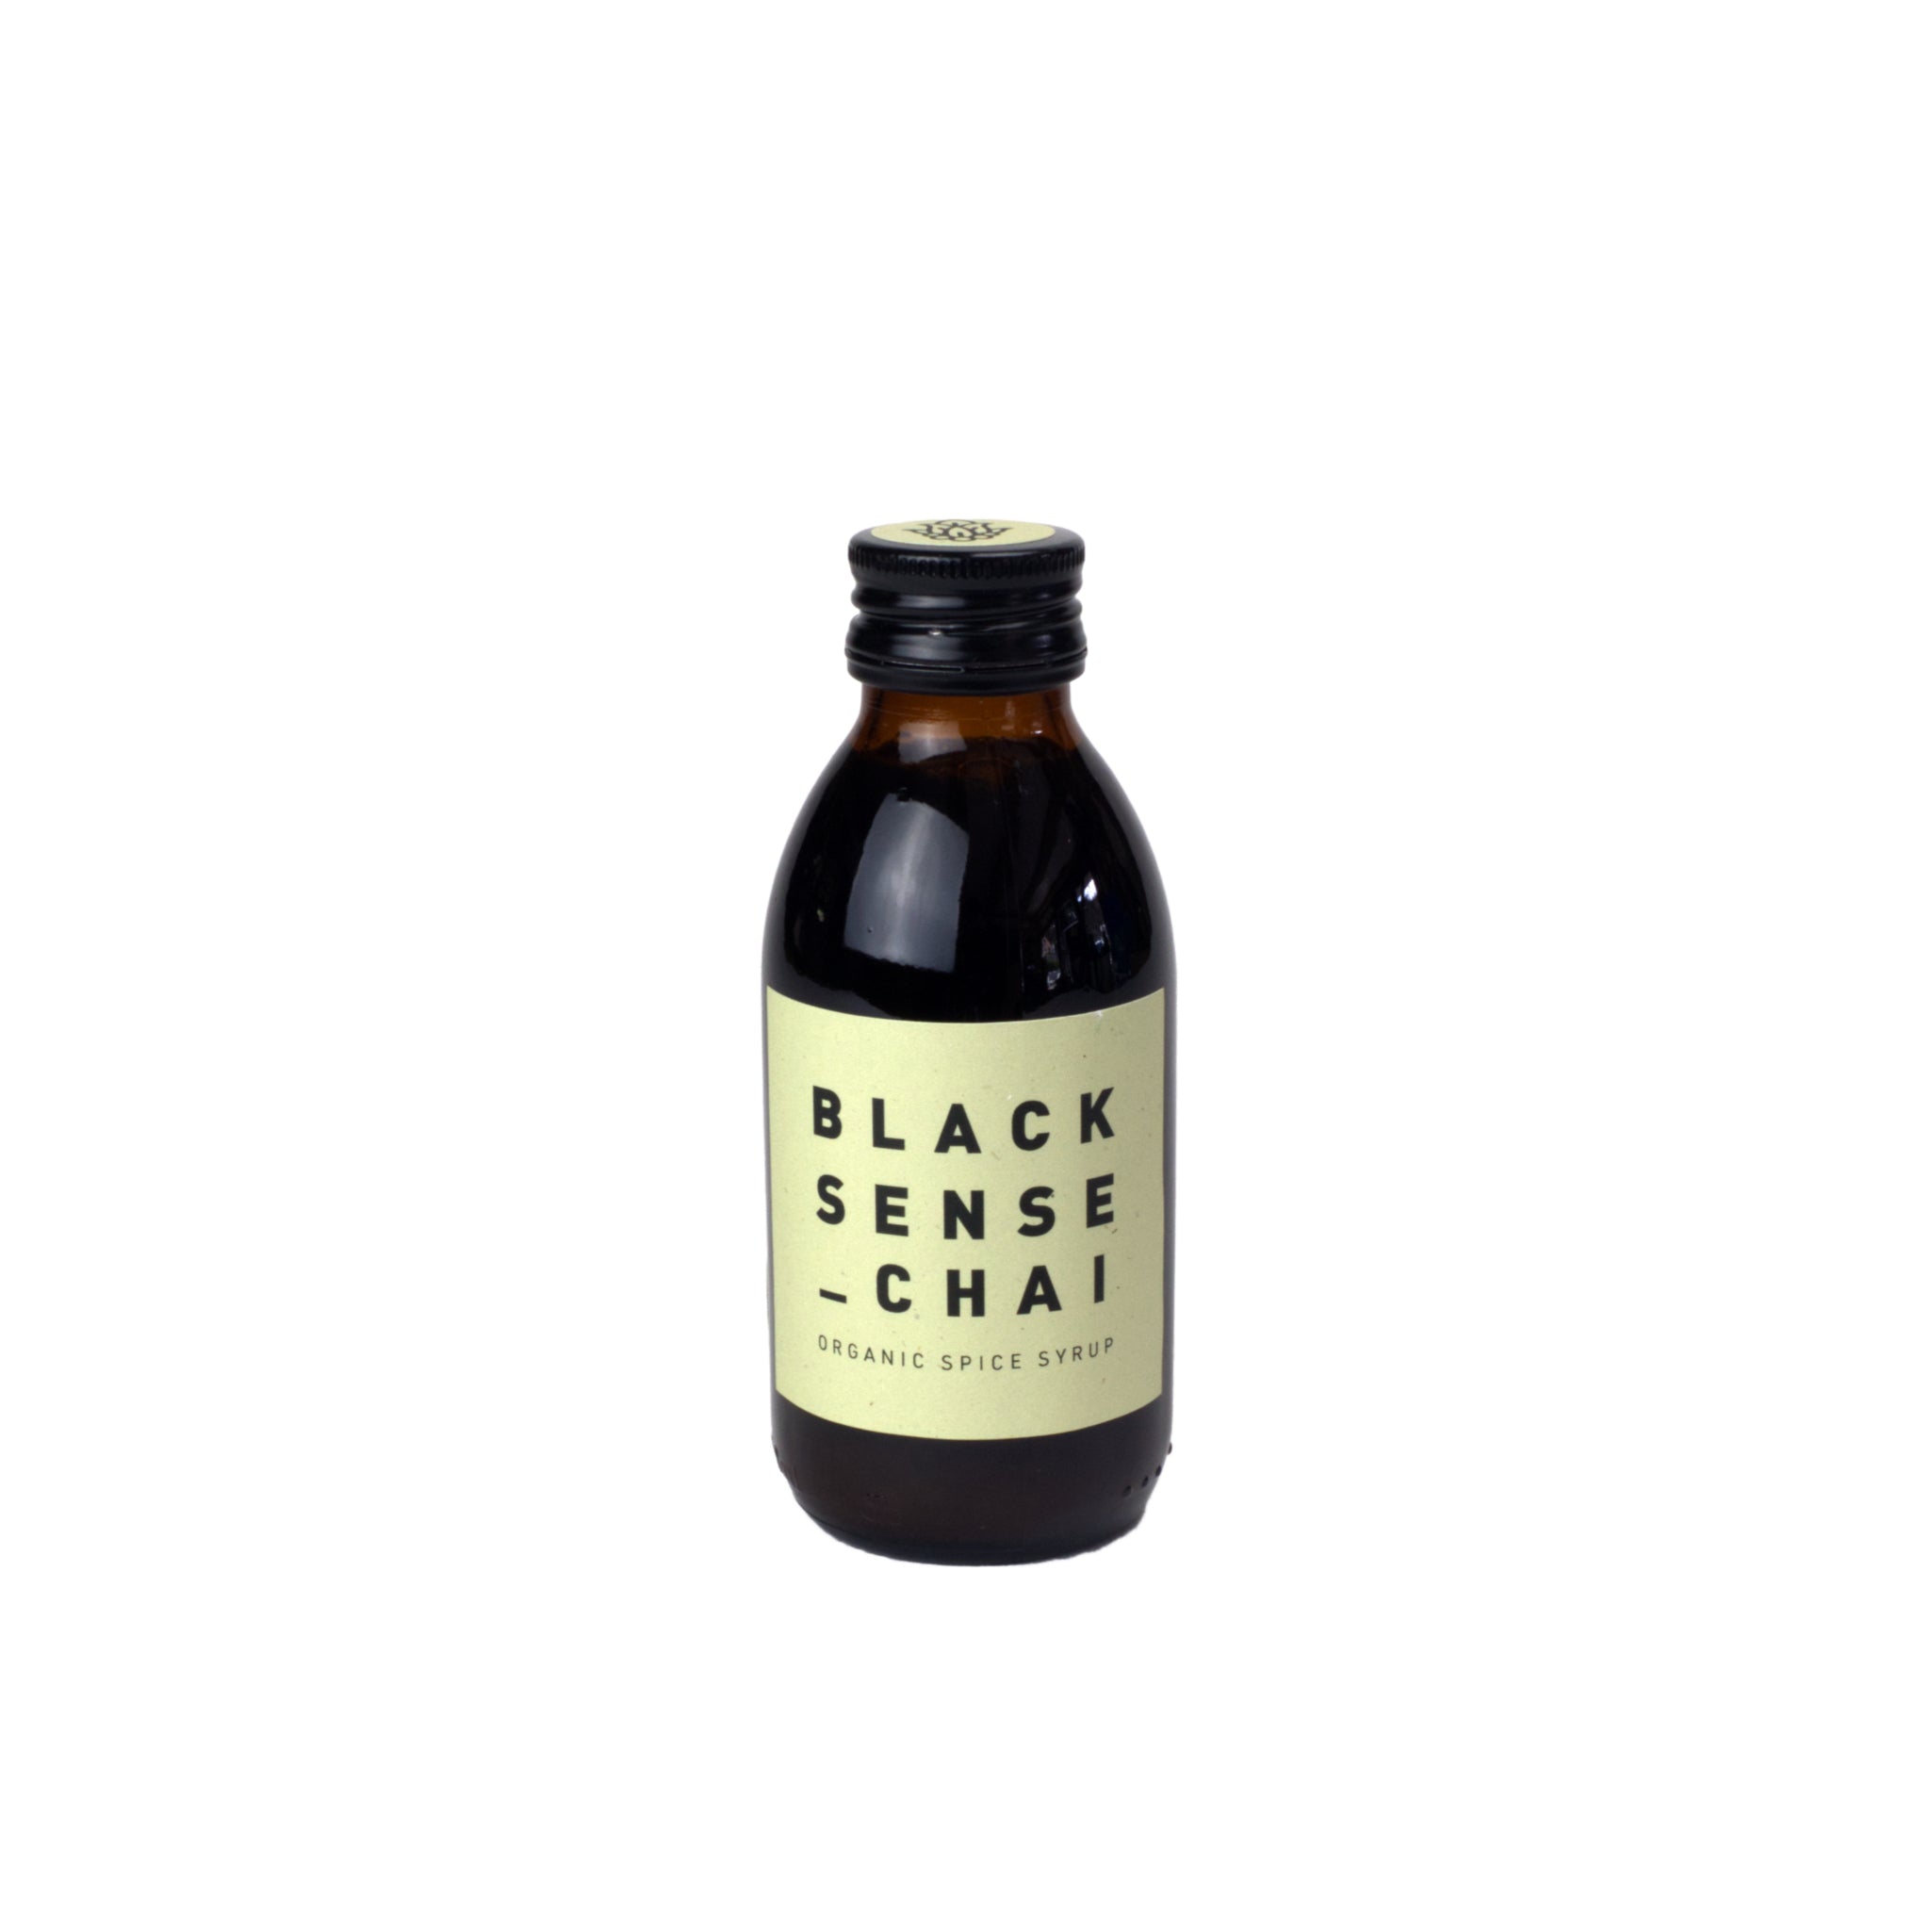 Black Sense Chai Flasche in 150 ml. Braune Flasche mit hellgelbem Etikett.